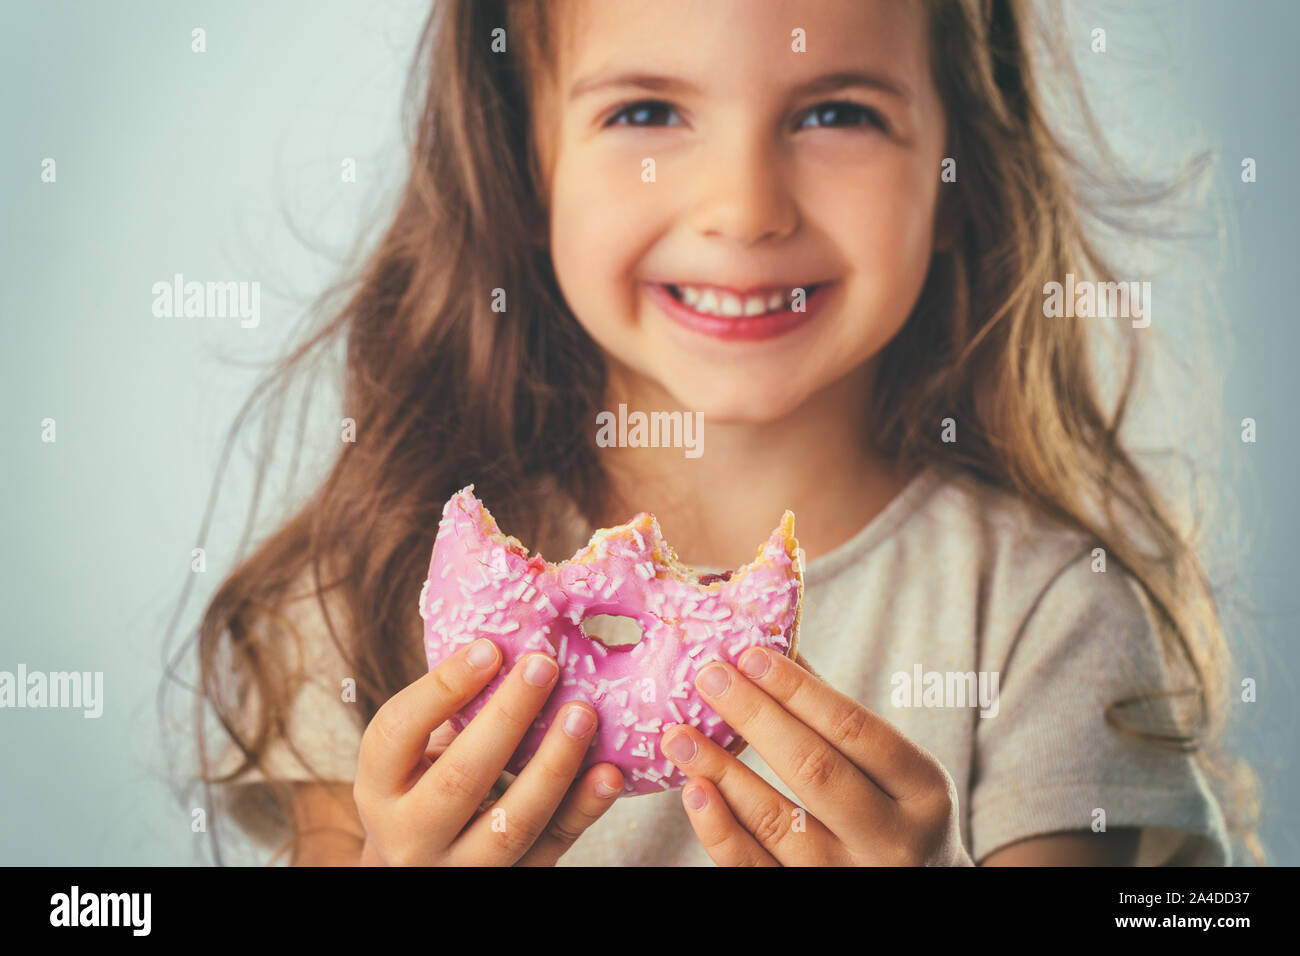 Sweet little girl eating pink donut. Stock Photo